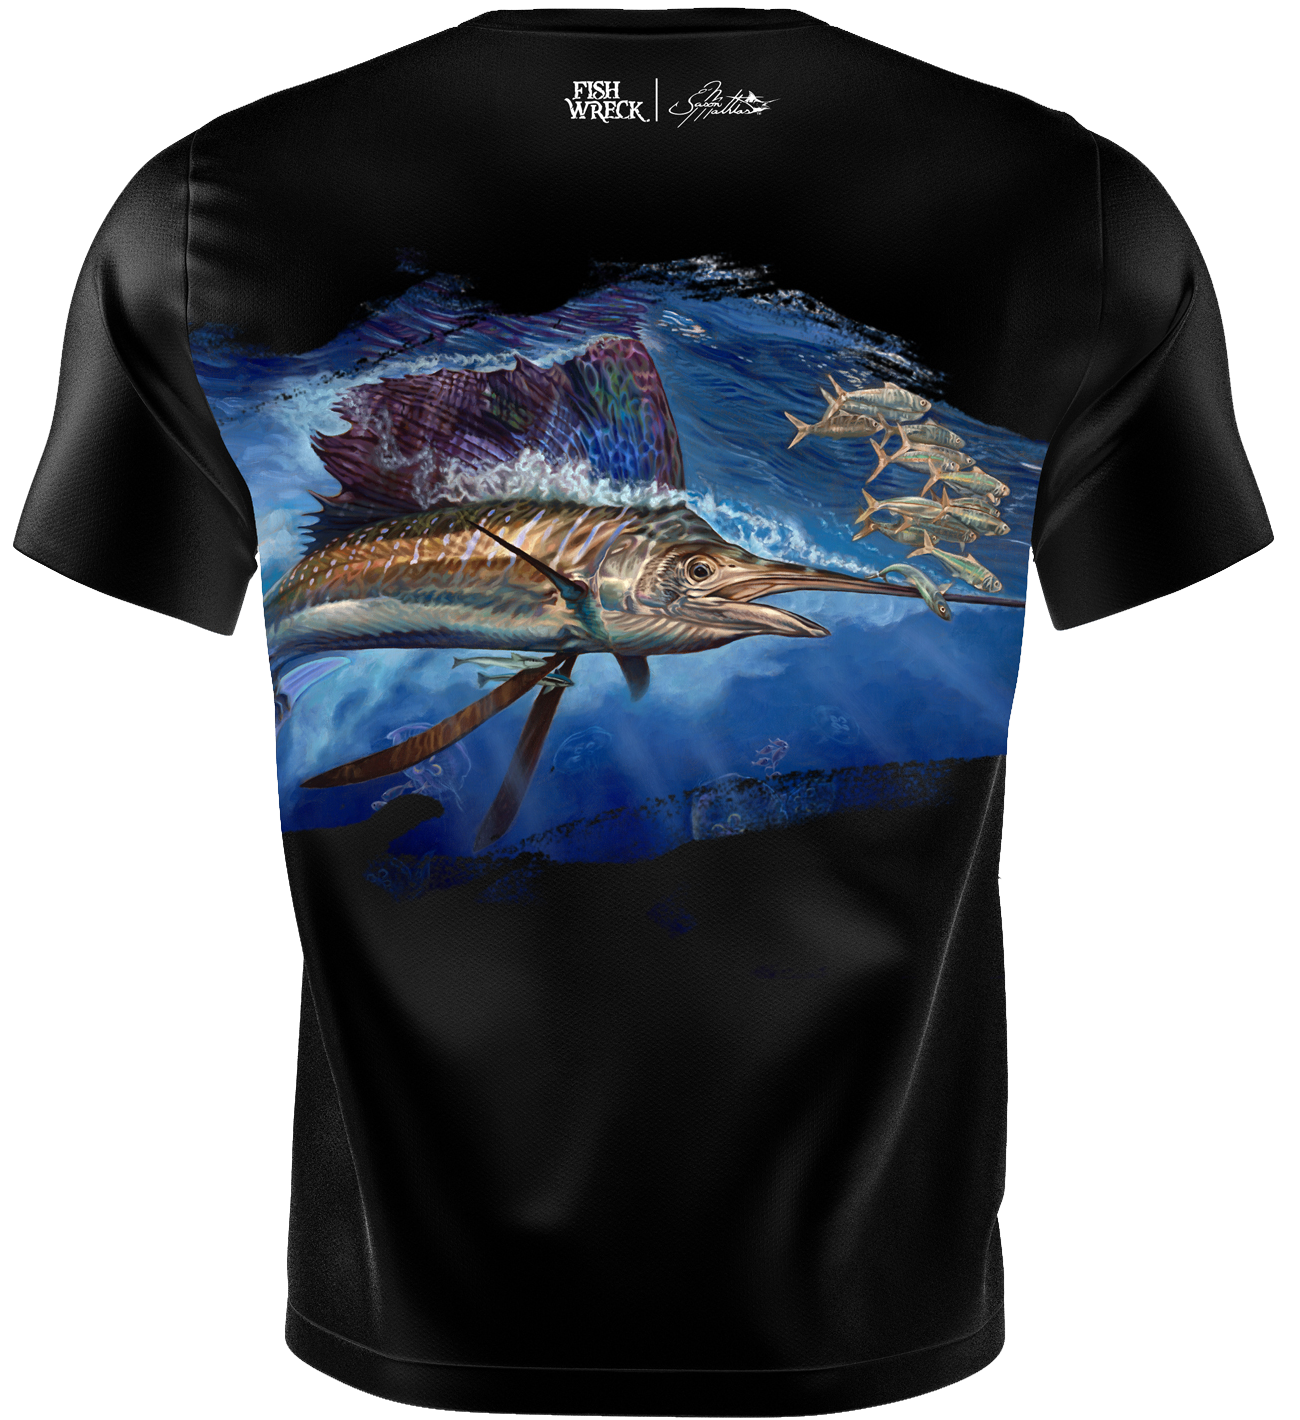 Atoll Sailfish Tee Shirt - Fishwreck